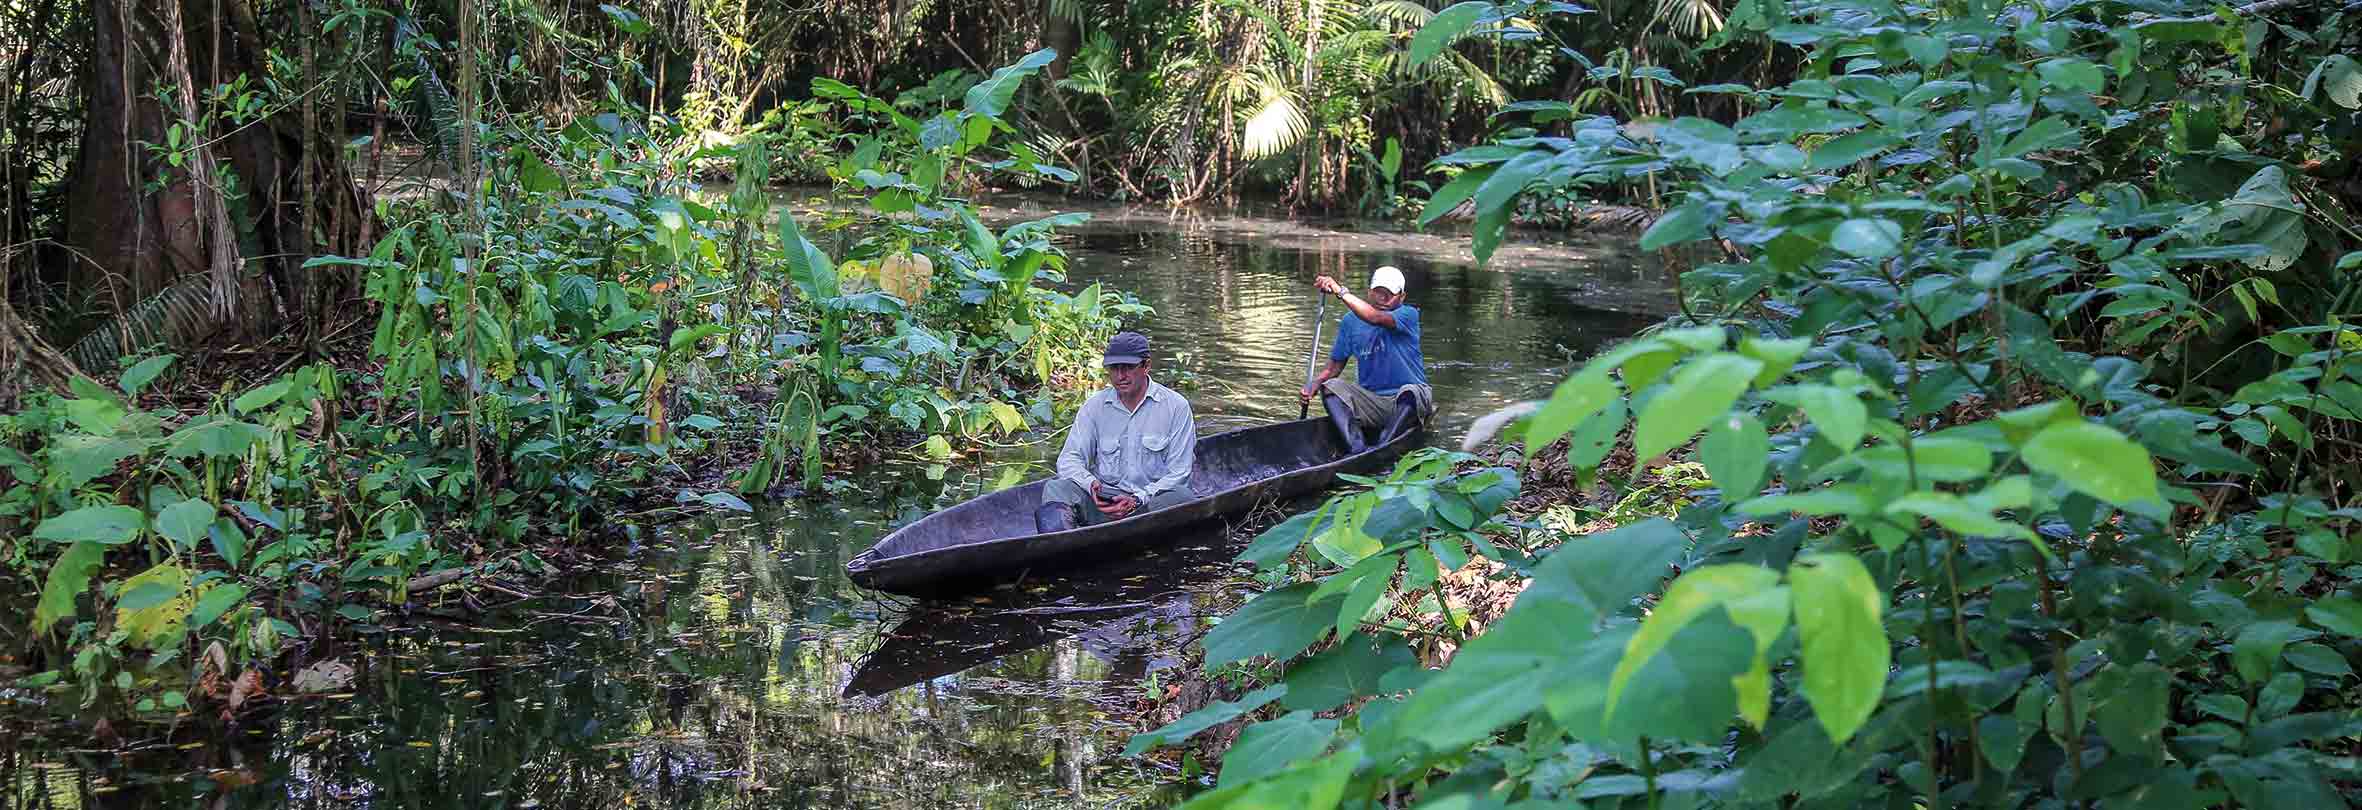 Wir entdecken den Amazonas von Ecuador per Kanu, zu Fuss und per Motorboot.